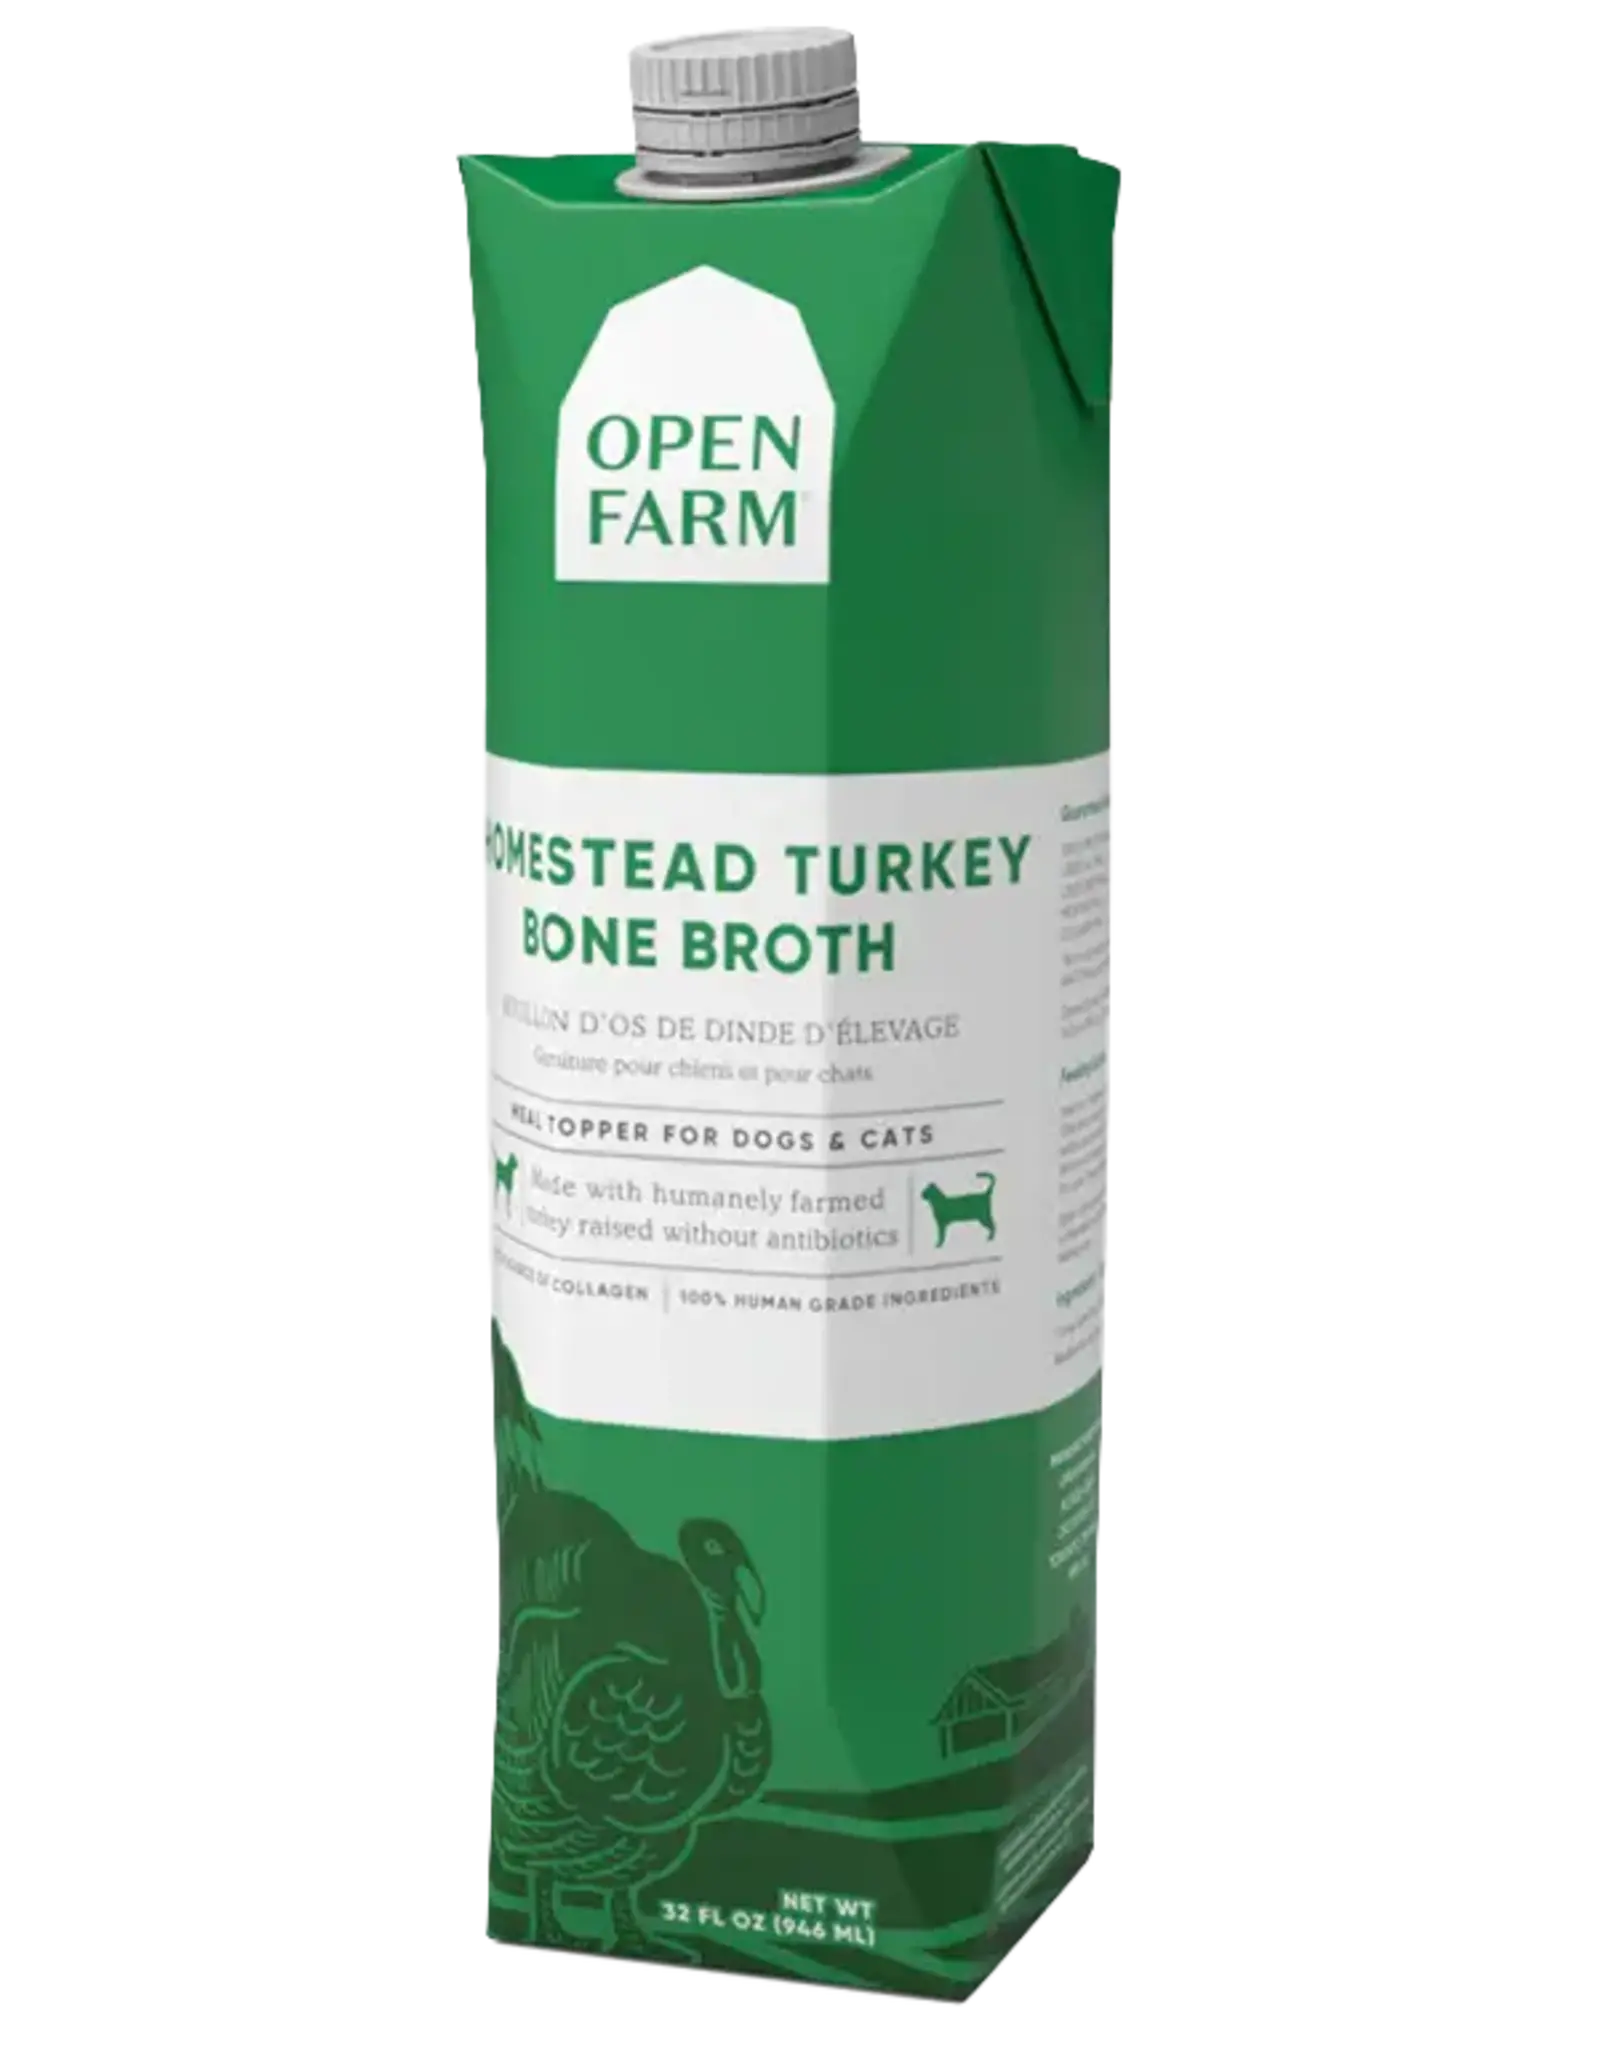 OPEN FARM OPEN FARM BONE BROTH TURKEY 33.8OZ